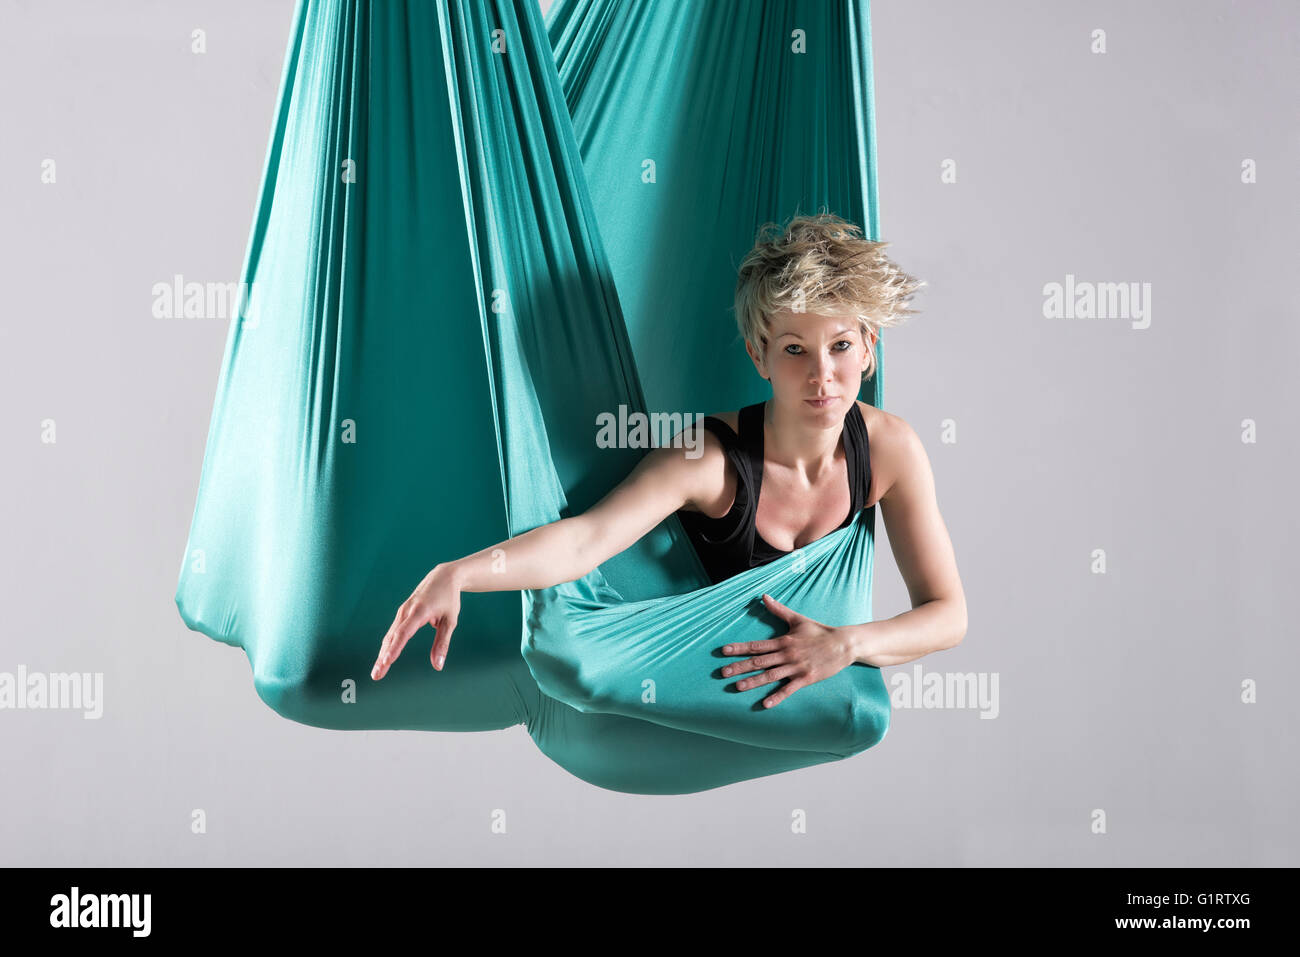 Coperta da yoga immagini e fotografie stock ad alta risoluzione - Alamy